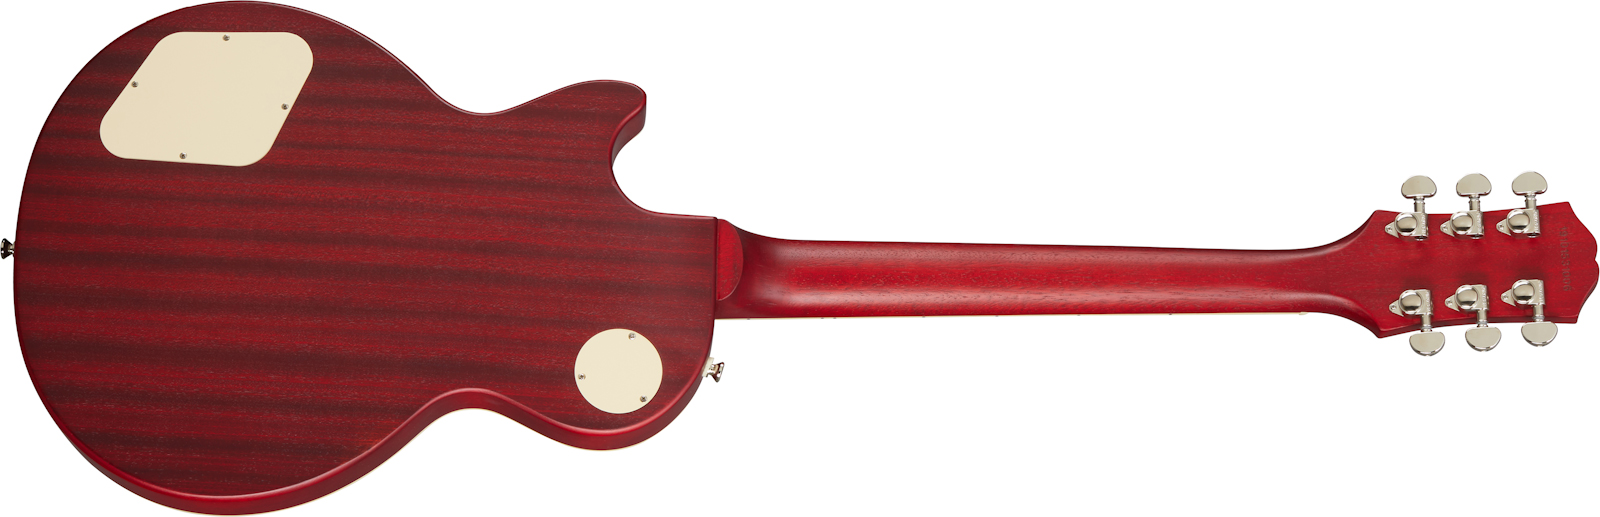 Epiphone Les Paul Classic Worn 2020 Hh Ht Rw - Worn Heritage Cherry Sunburst - Guitare Électrique Single Cut - Variation 1